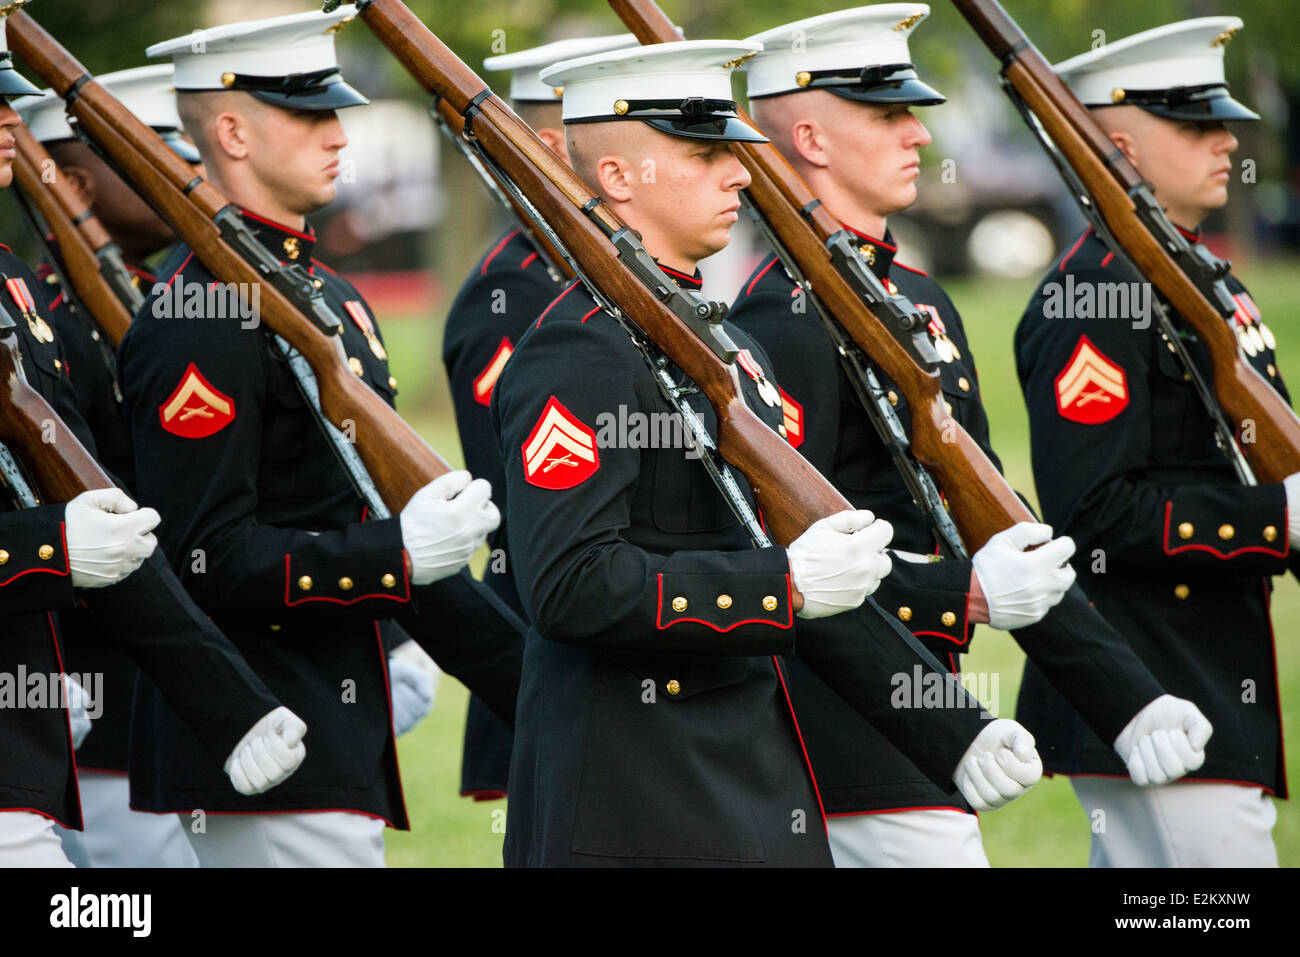 WASHINGTON DC, Estados Unidos — El equipo Silent Drill, un grupo de élite de miembros del Cuerpo de Marines de los Estados Unidos, realiza una rutina impresionante y meticulosamente coreografiada, mostrando su disciplina, precisión y calidad. Y habilidad en el Desfile de la Puesta del Sol en el Memorial Iwo Jima en Arlington, Virginia. Foto de stock